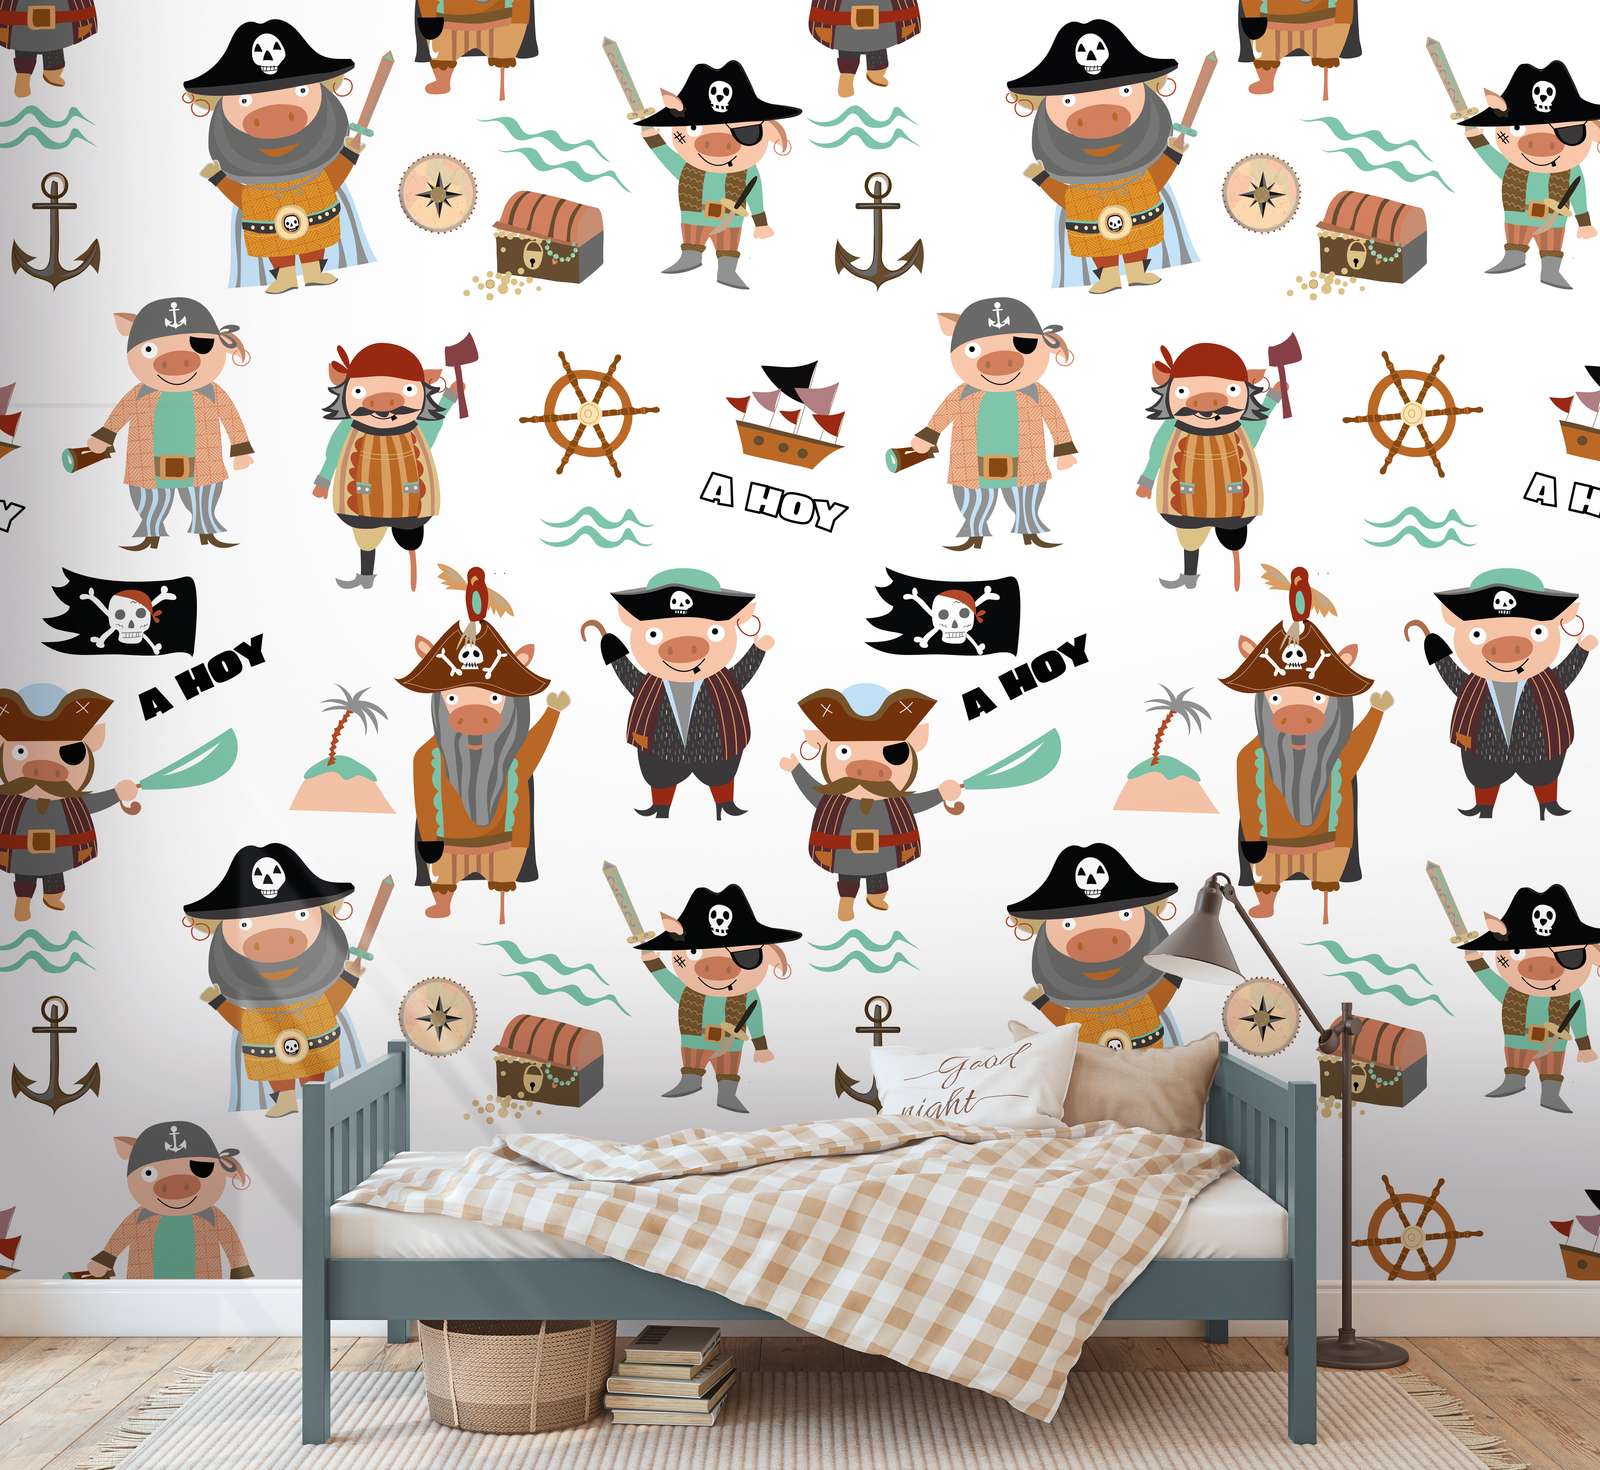             Kinder Tapete mit verschiedenen Piraten und Symbolen – Bunt, Creme, Braun
        